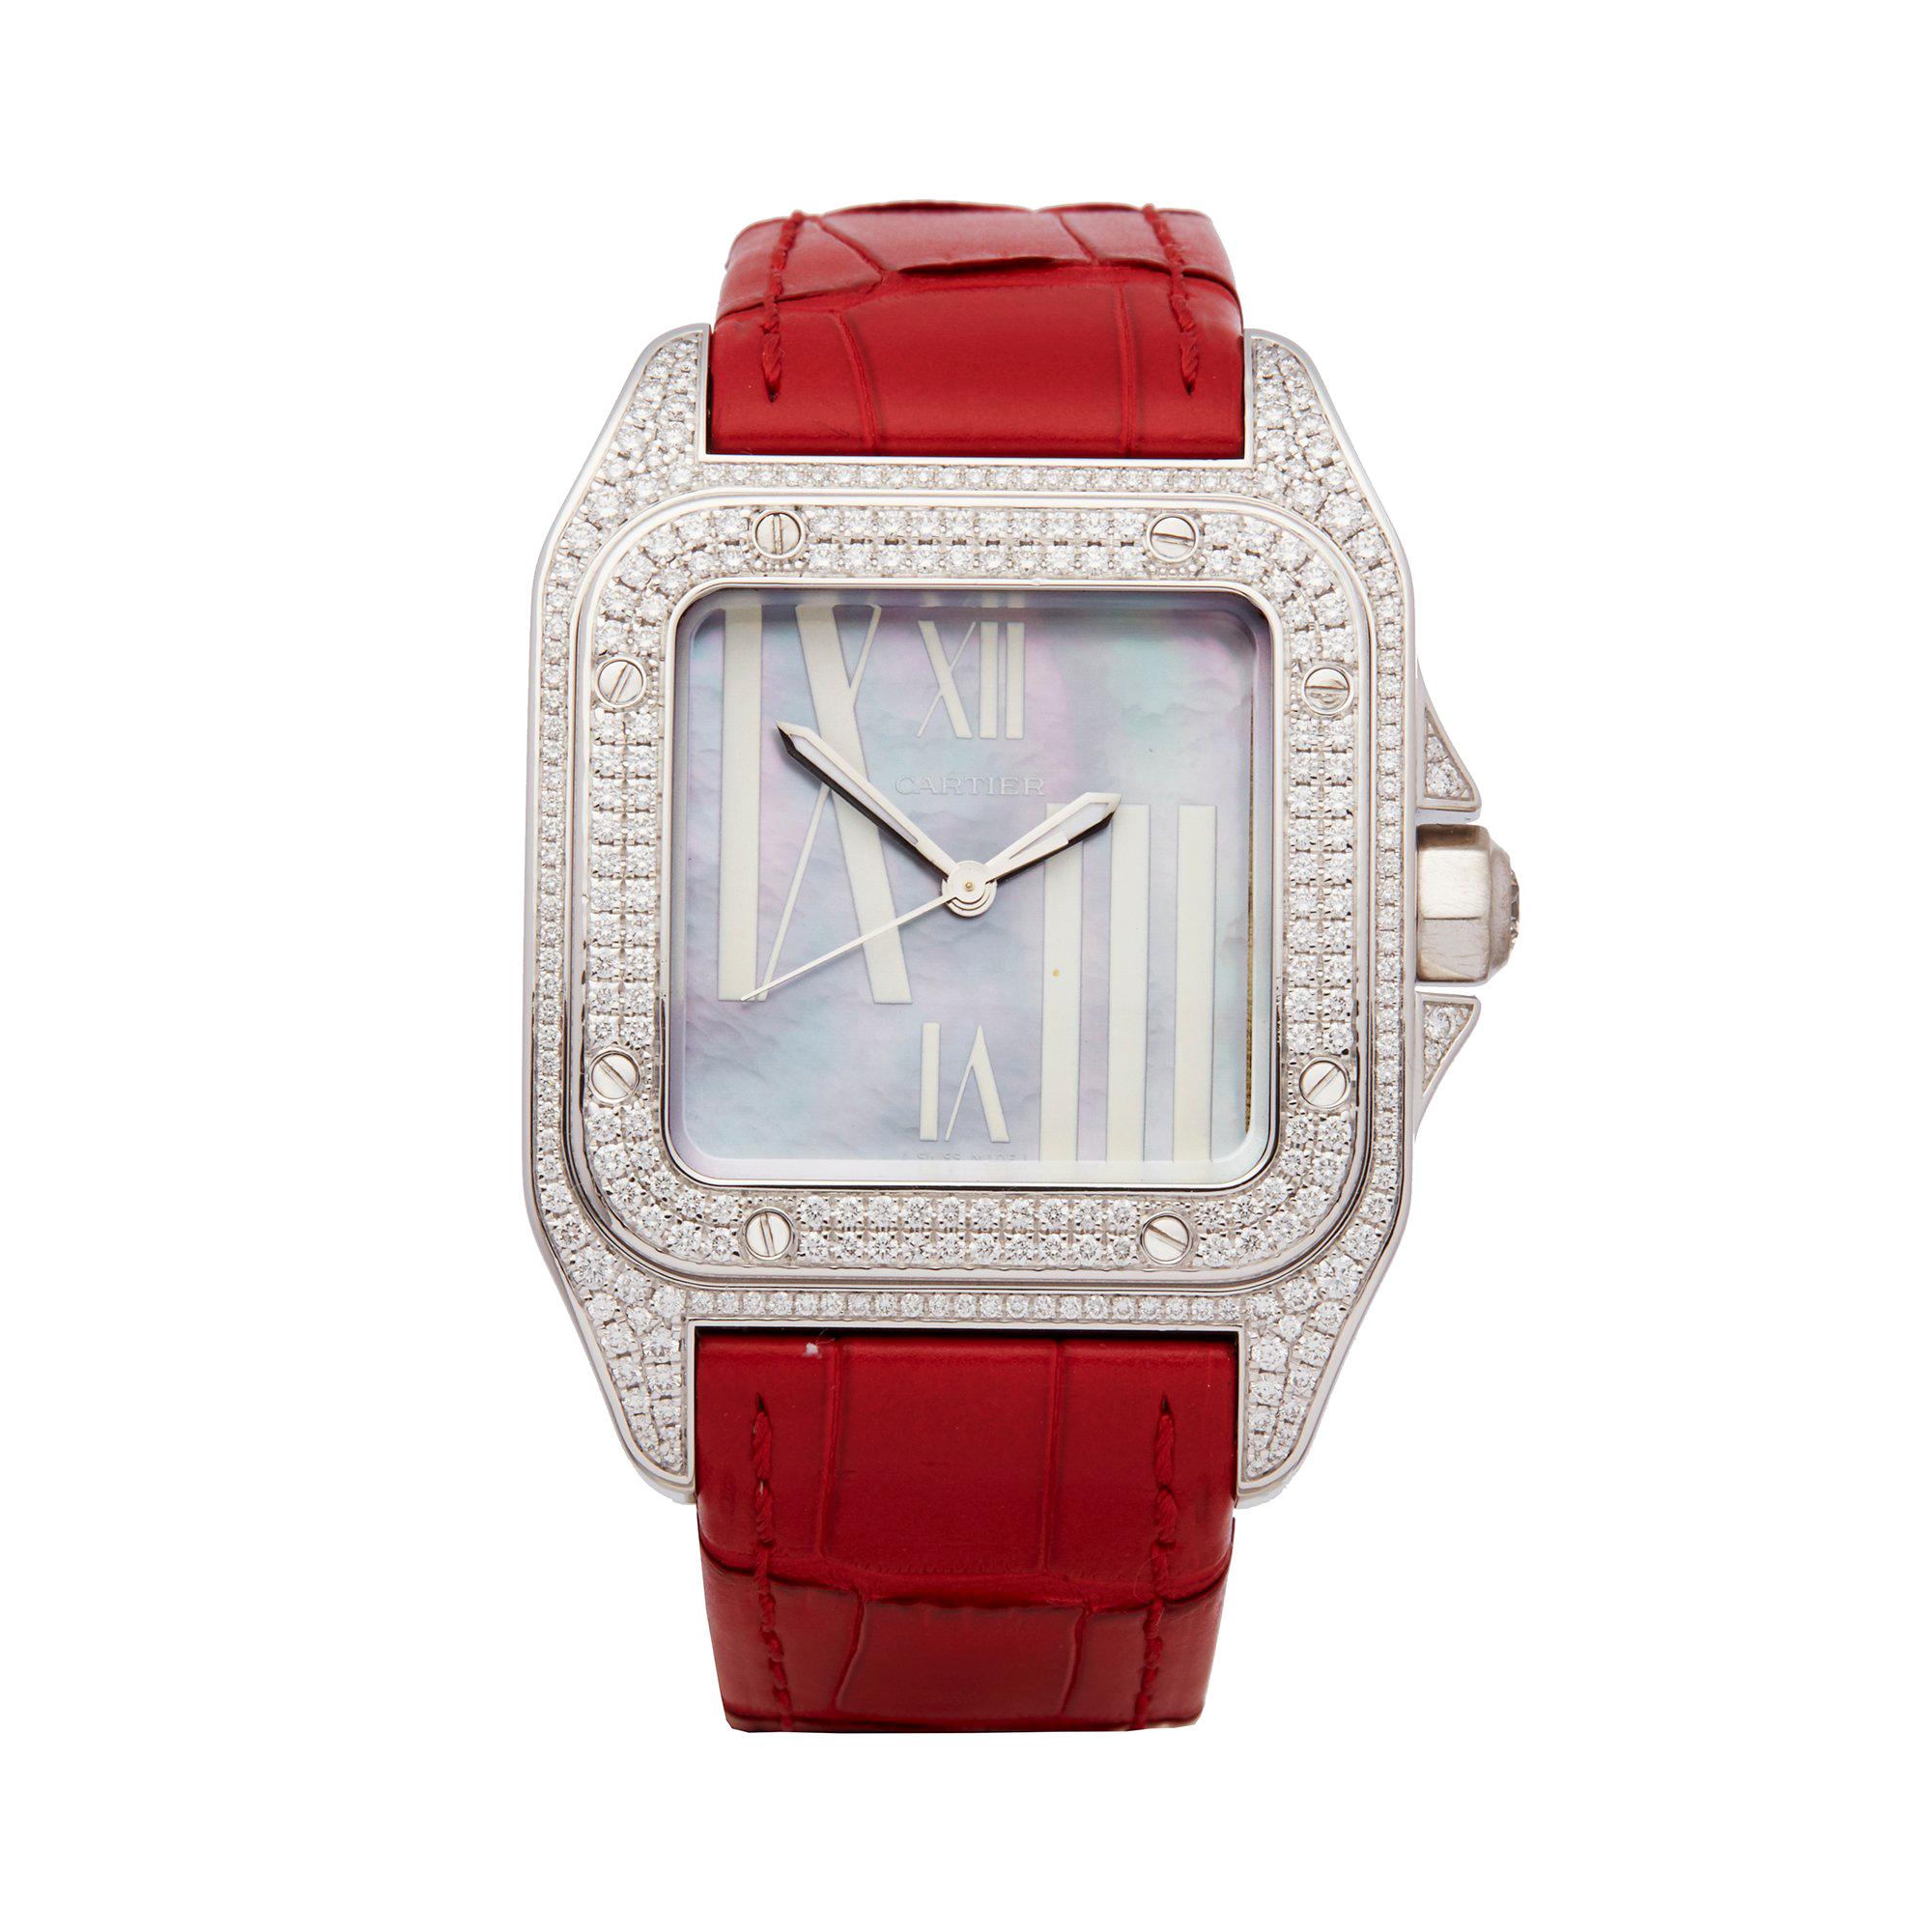 Cartier Santos 100 18k White Gold 2881 Wristwatch